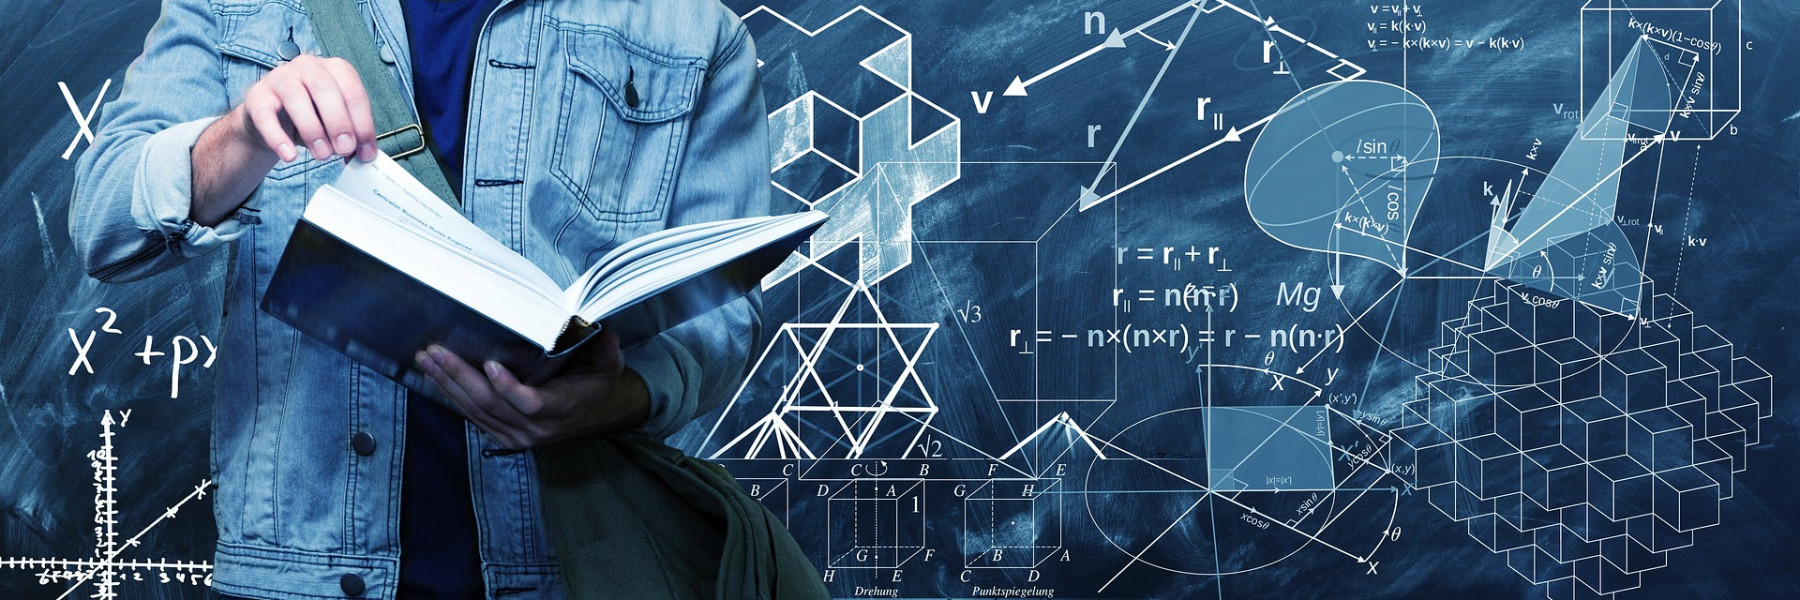 Tułów człowieka trzymający książkę, z tyłu tablica z wzorami matematycznymi